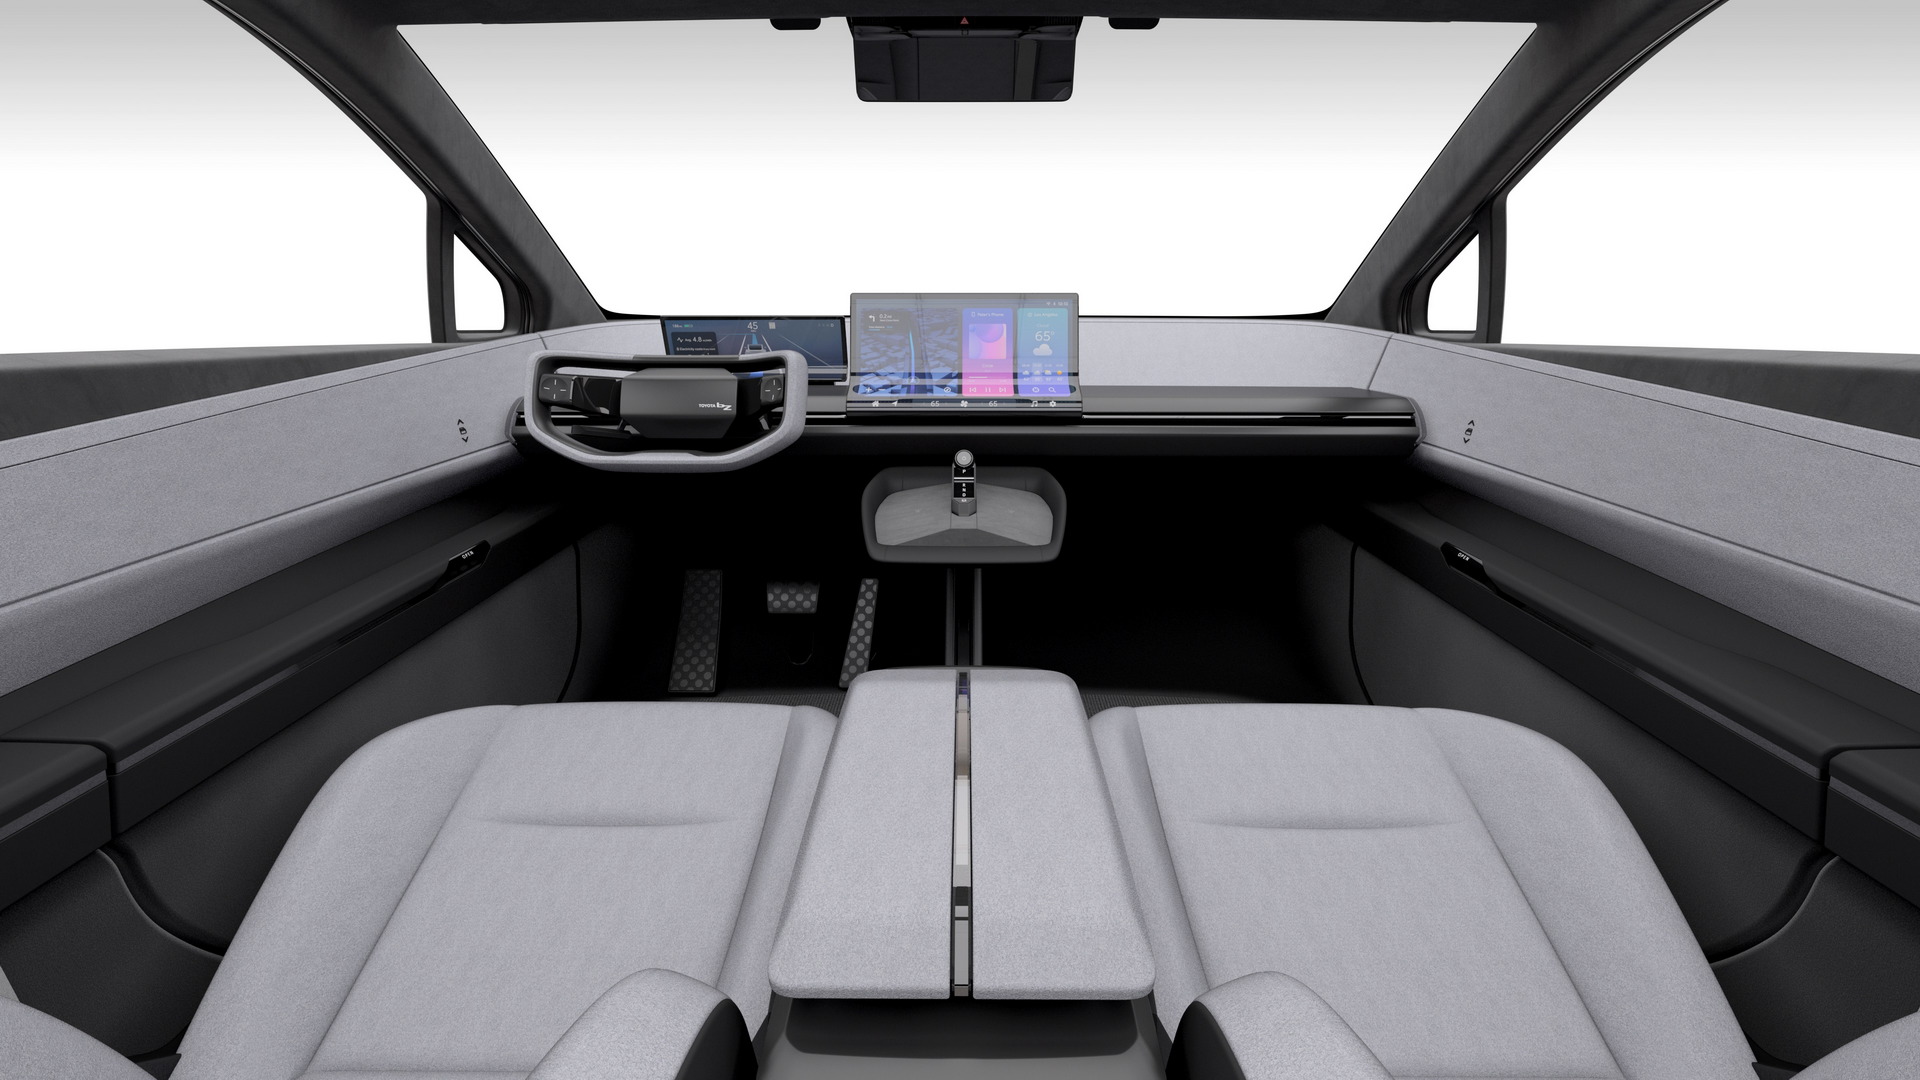 تدشين تويوتا bZ كومباكت SUV الكهربائية الجديدة كلياً بتصميم انسيابي وداخلية عصرية 3